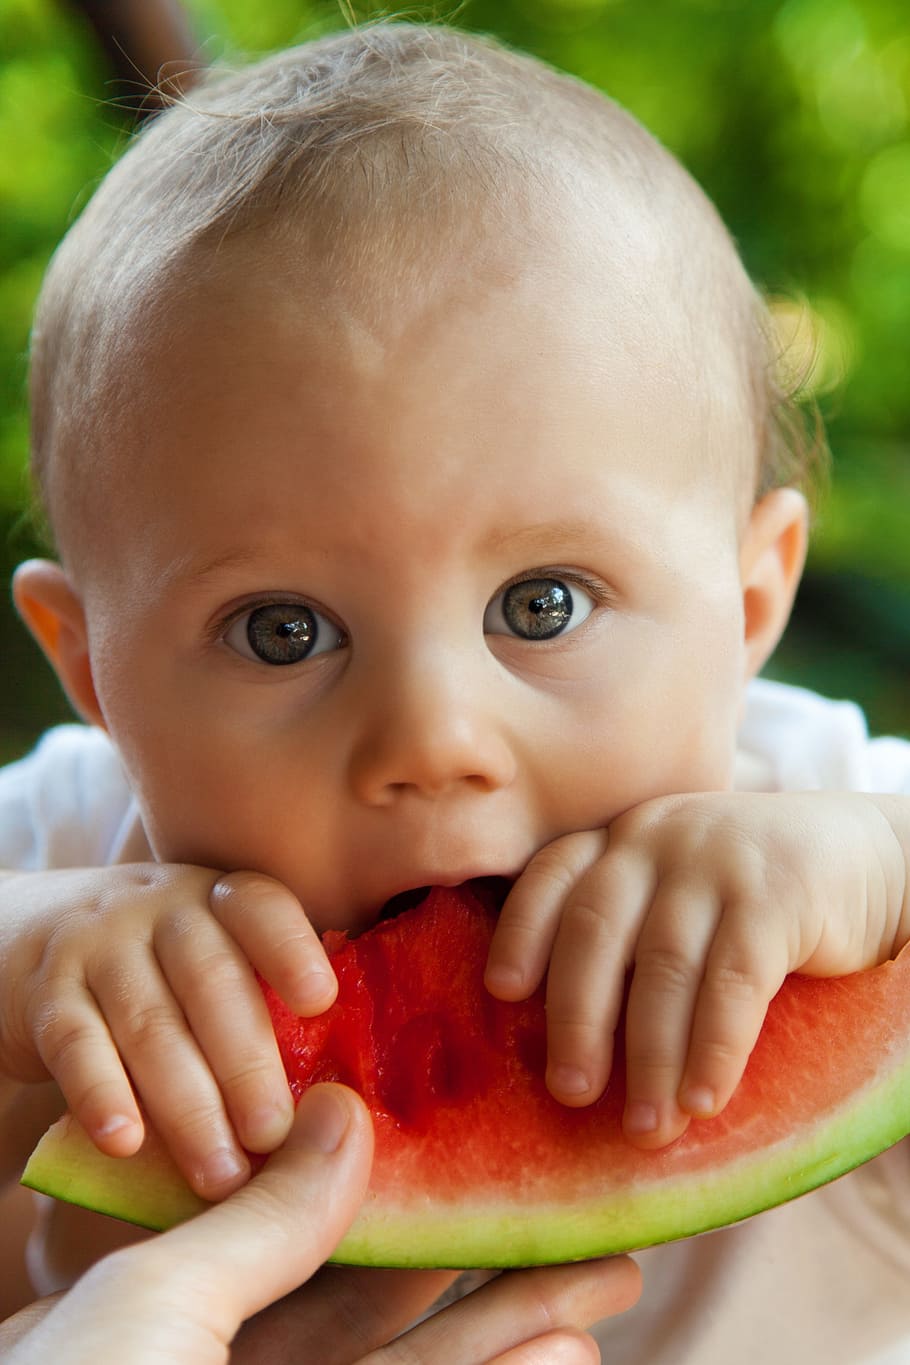 bebé comiendo sandía, bebé, mordedura, chico, niño, lindo, comer, comida, fruta, diversión